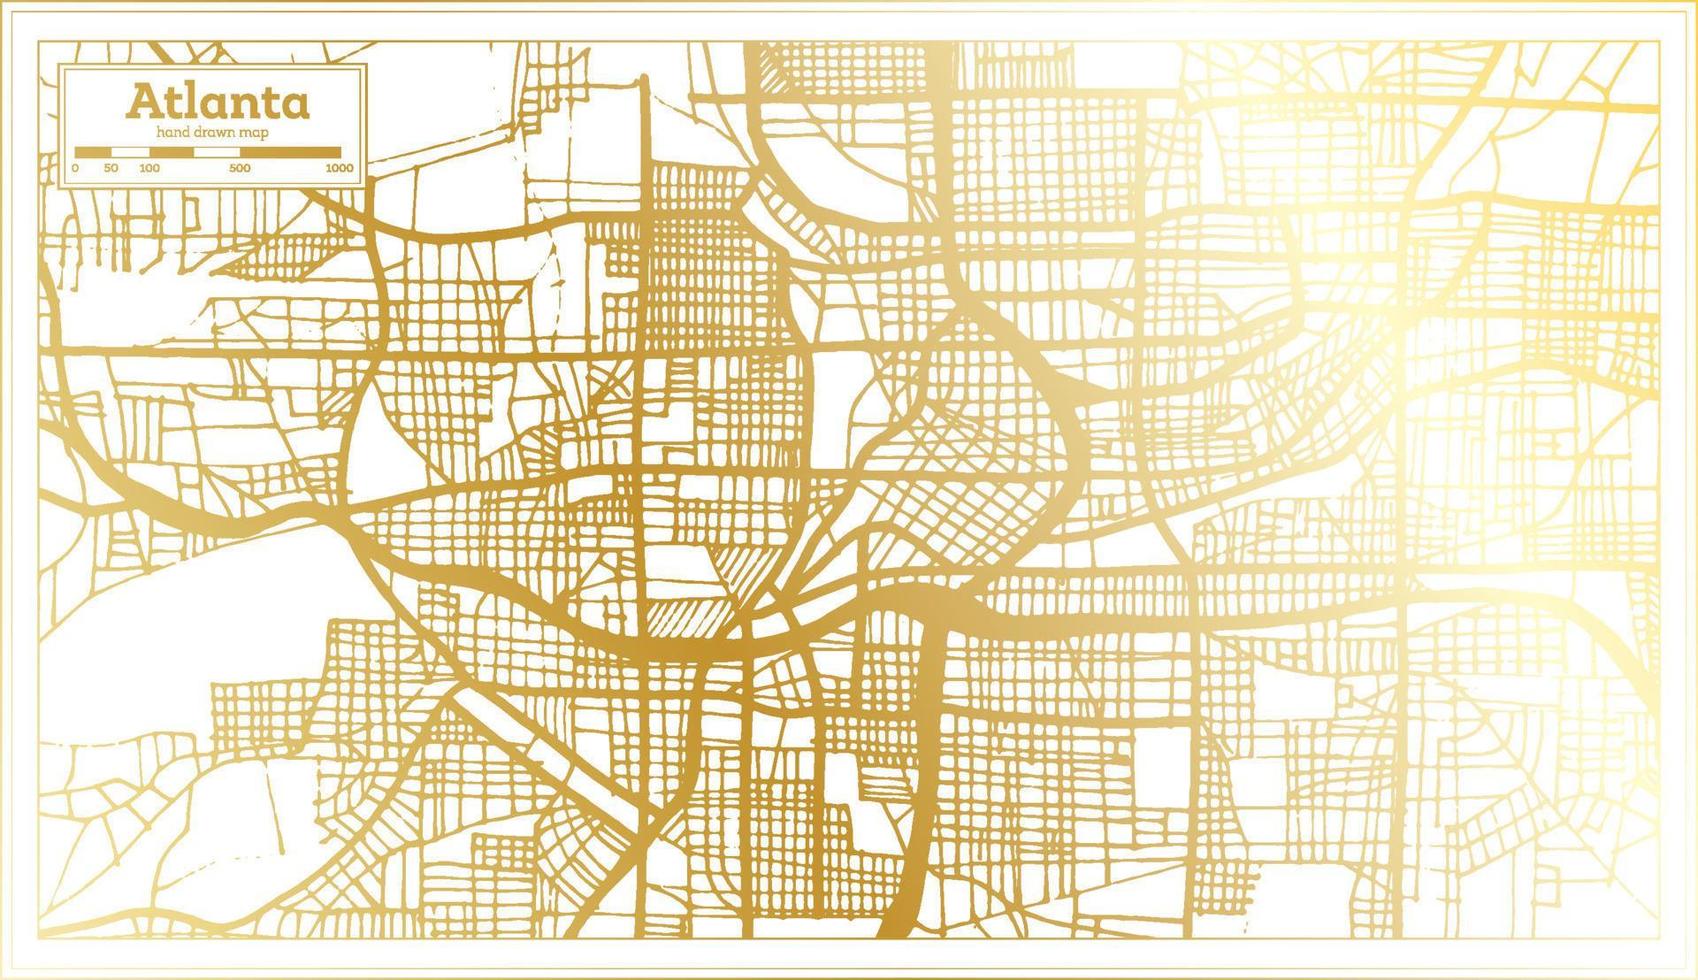 plan de la ville d'atlanta georgia usa dans un style rétro de couleur dorée. carte muette. vecteur